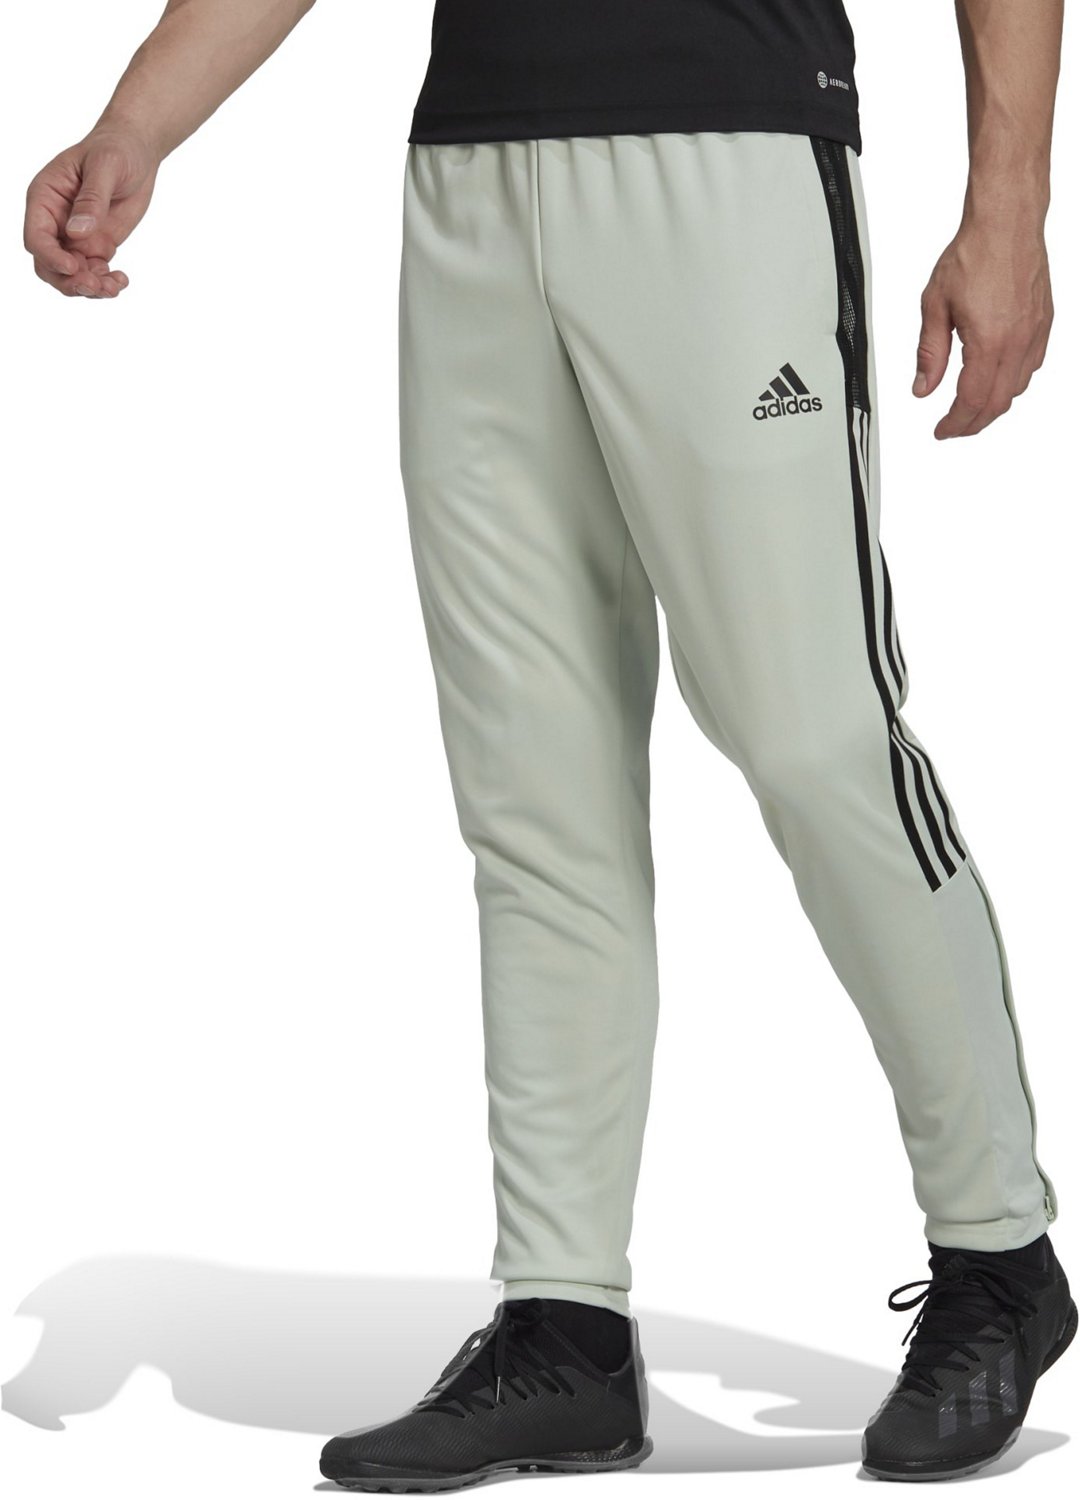  adidas Men'S Hurricanes Baseball Jersey, Dark Green, XL :  Sports & Outdoors